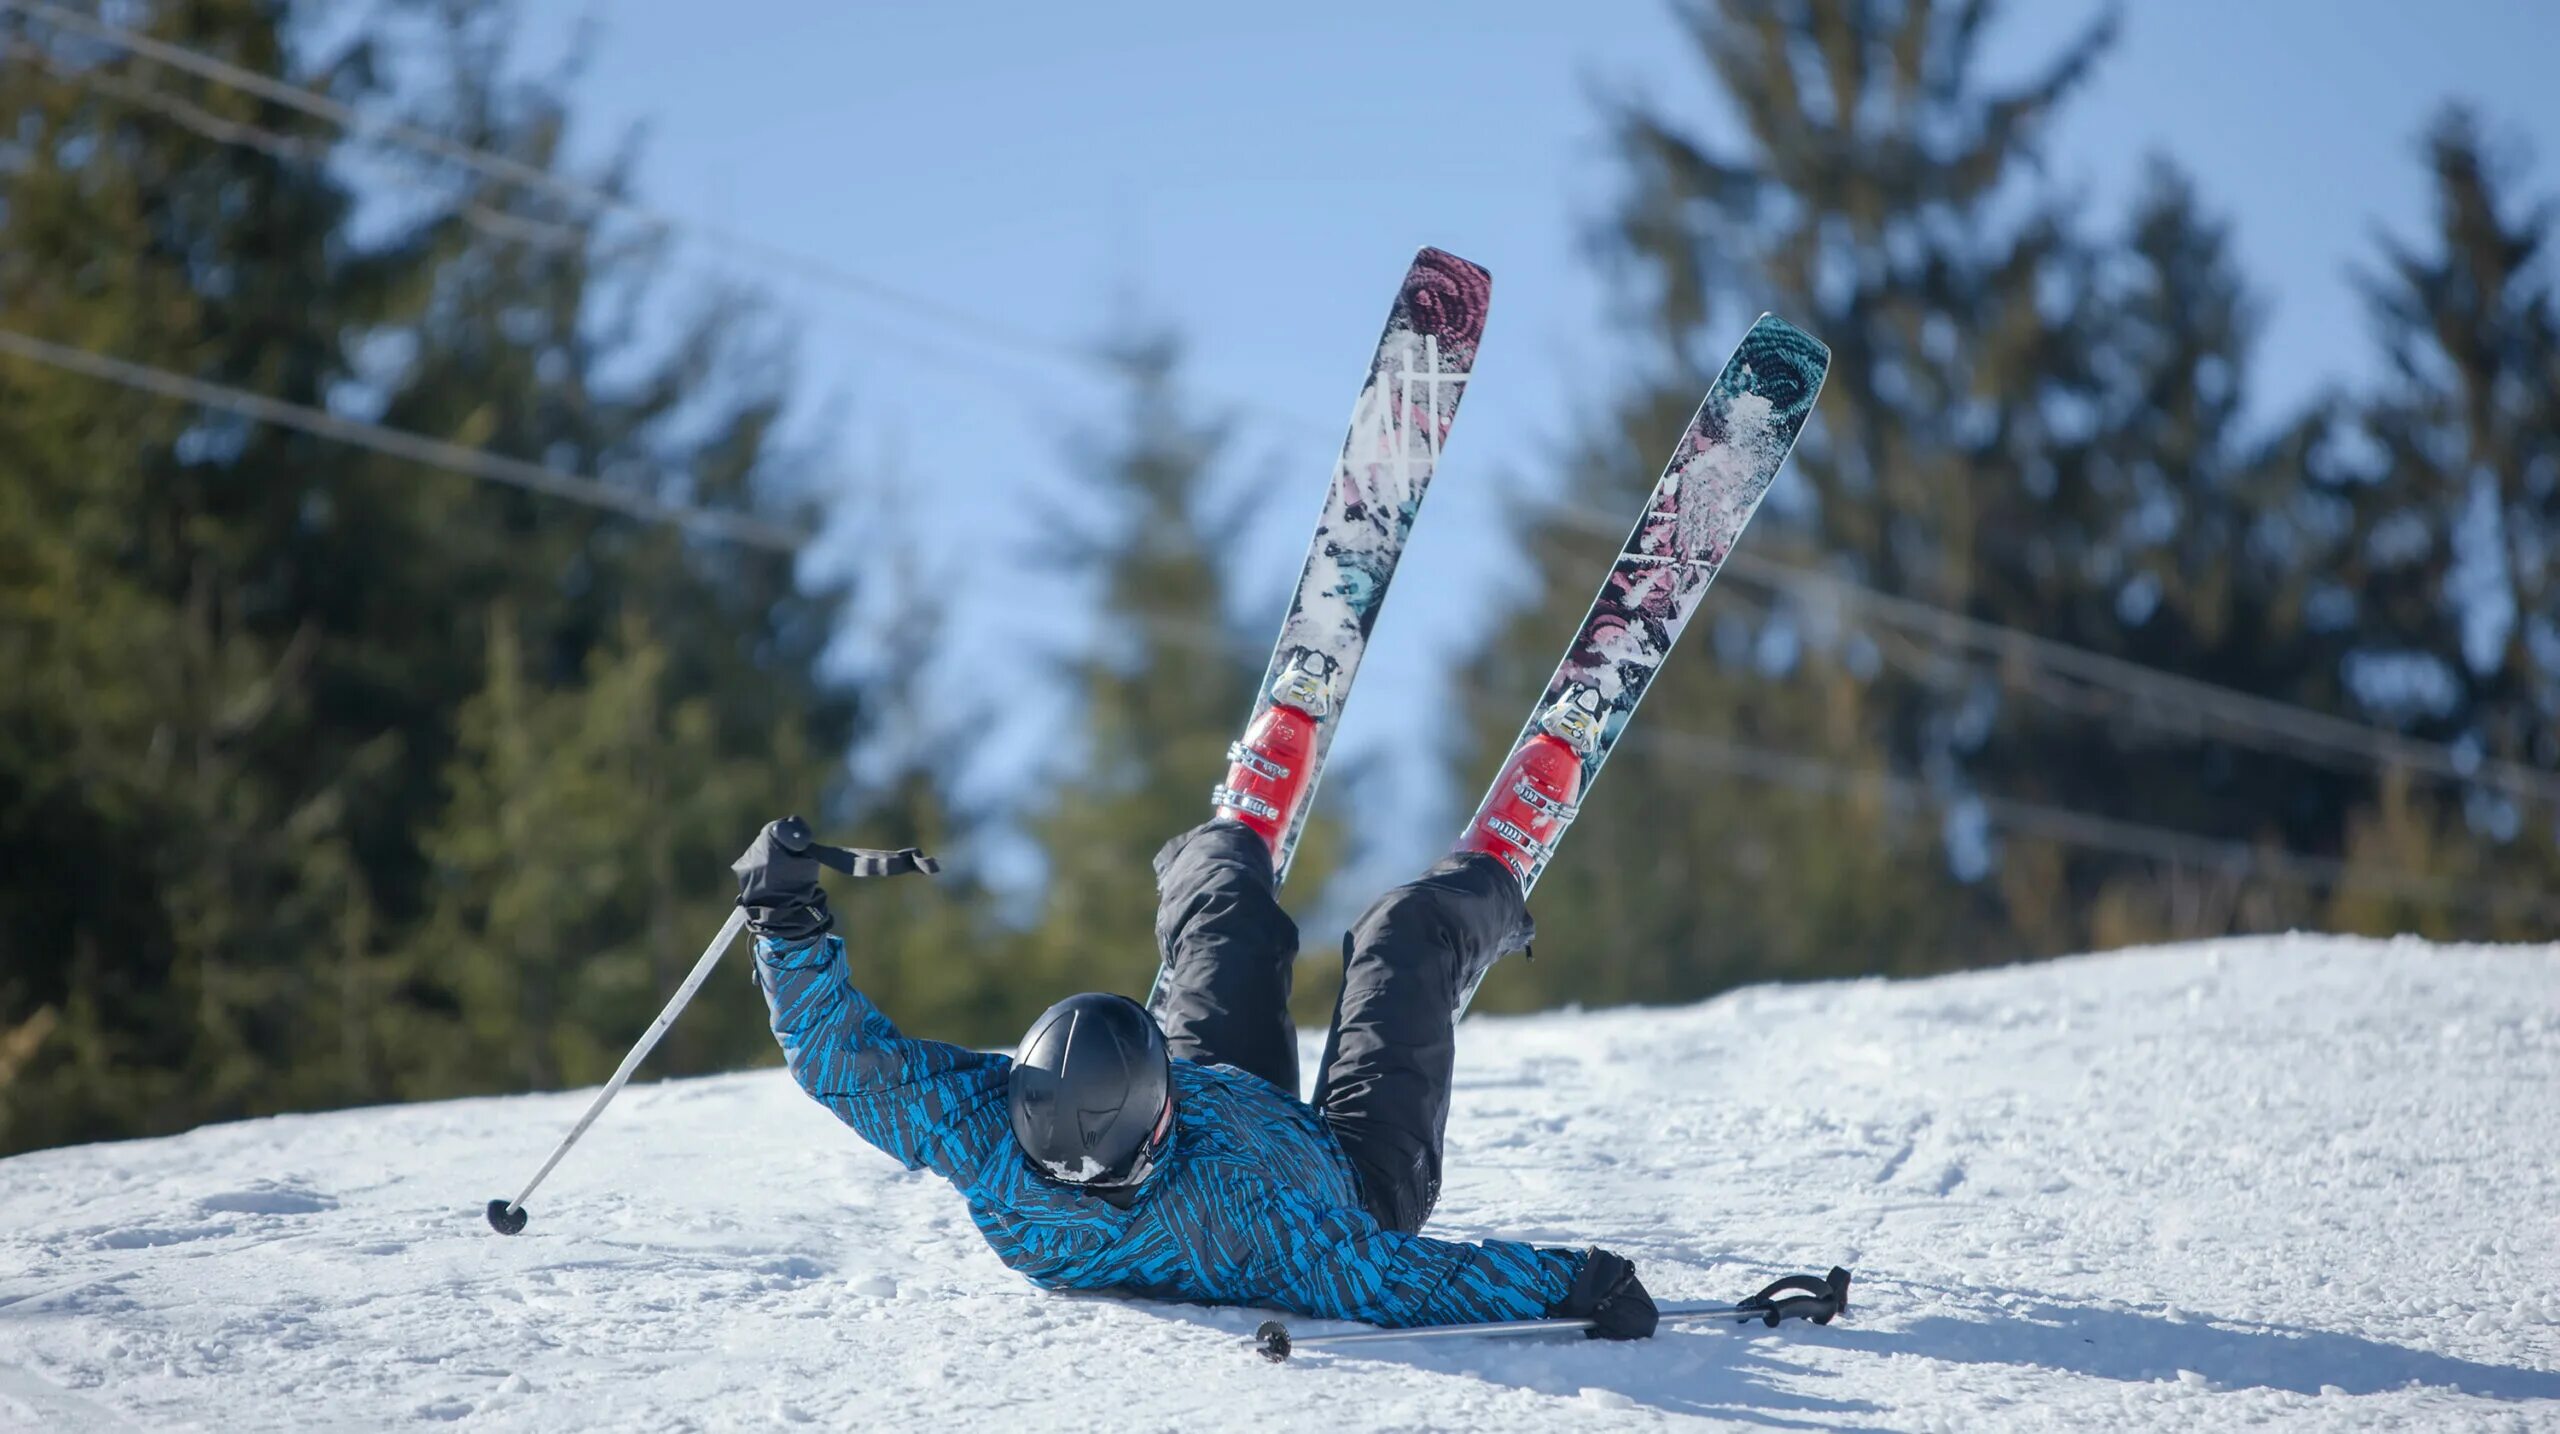 Лыжники упали. Лыжник падает с горы. Упал на лыжах. Падение на горных лыжах. Лыжник упал.